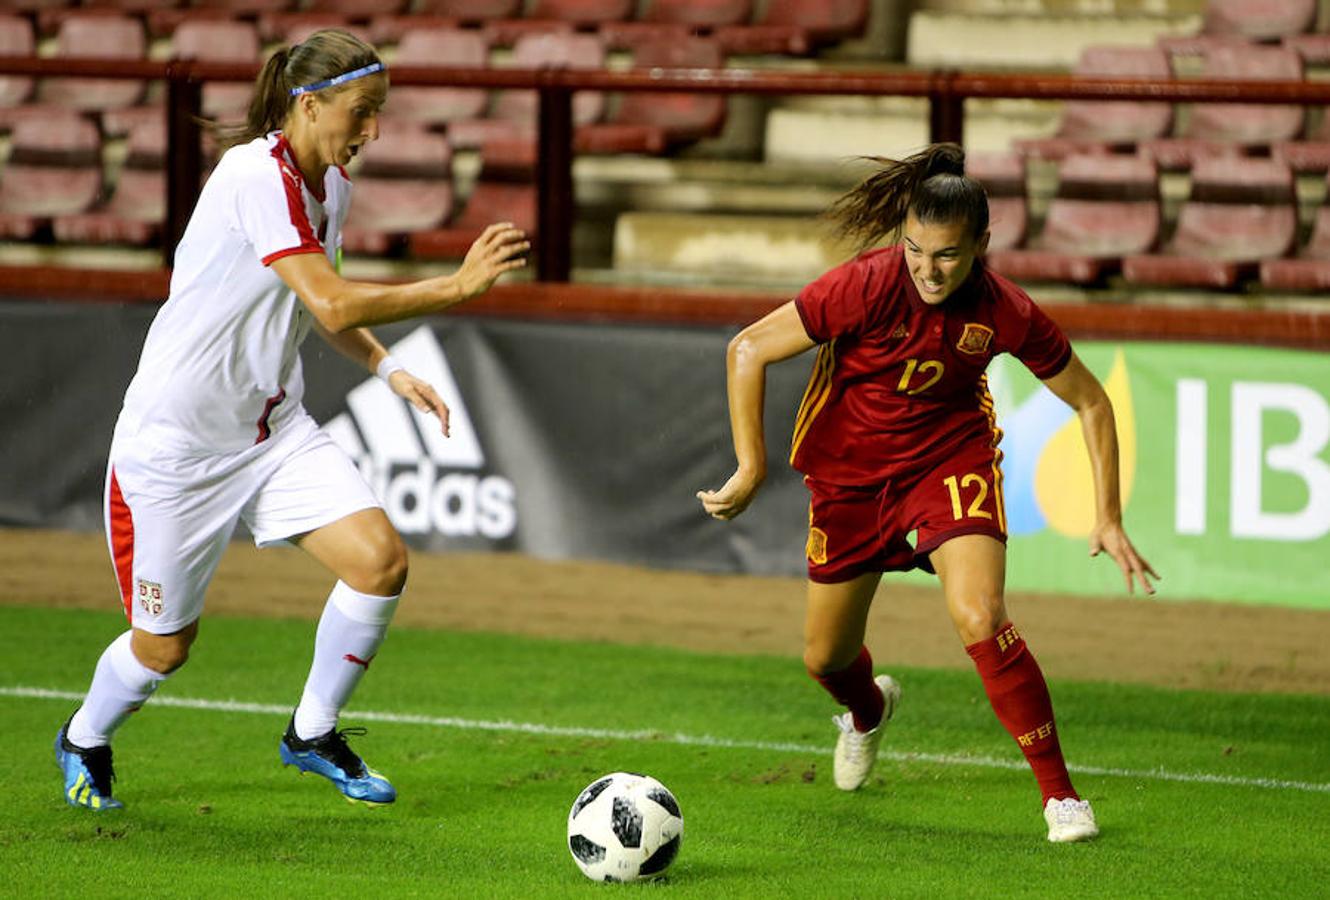 La selección femenina de España se ha impuesto hoy por 3-0 a la de Serbia en el último partido de clasificación para el Mundial del próximo año, en un choque intrascendente en el que las de Jorge Vilda han cumplido su papel y han superado a un combativo rival.